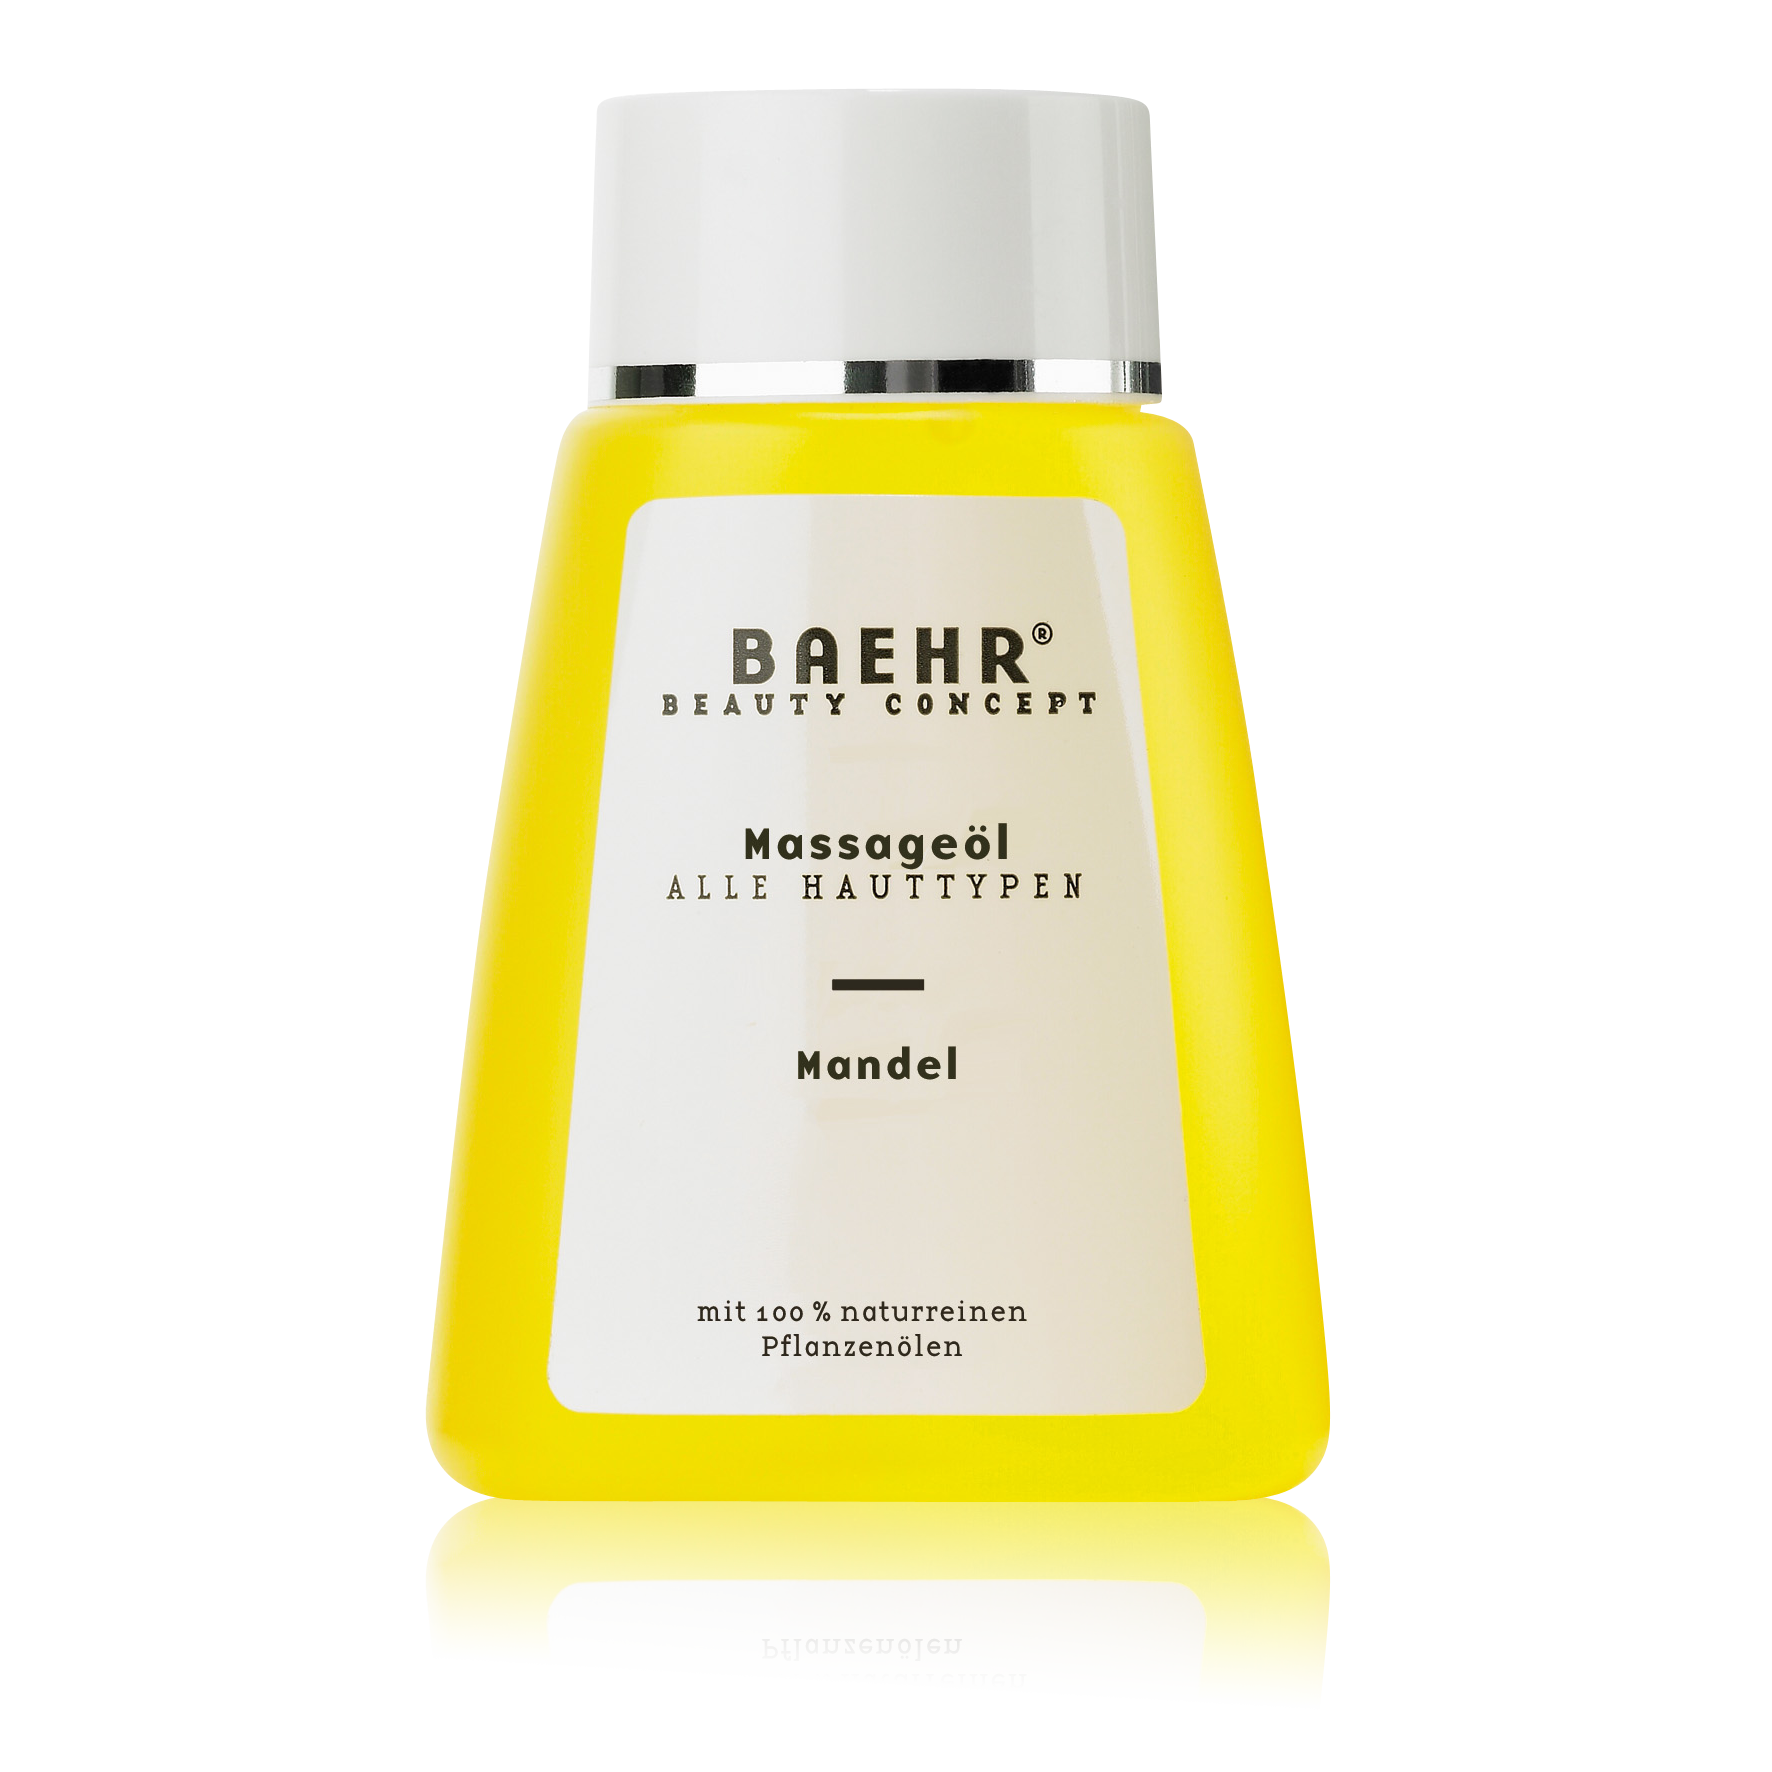 BAEHR BEAUTY CONCEPT Massageöl Mandel Flasche 100 ml